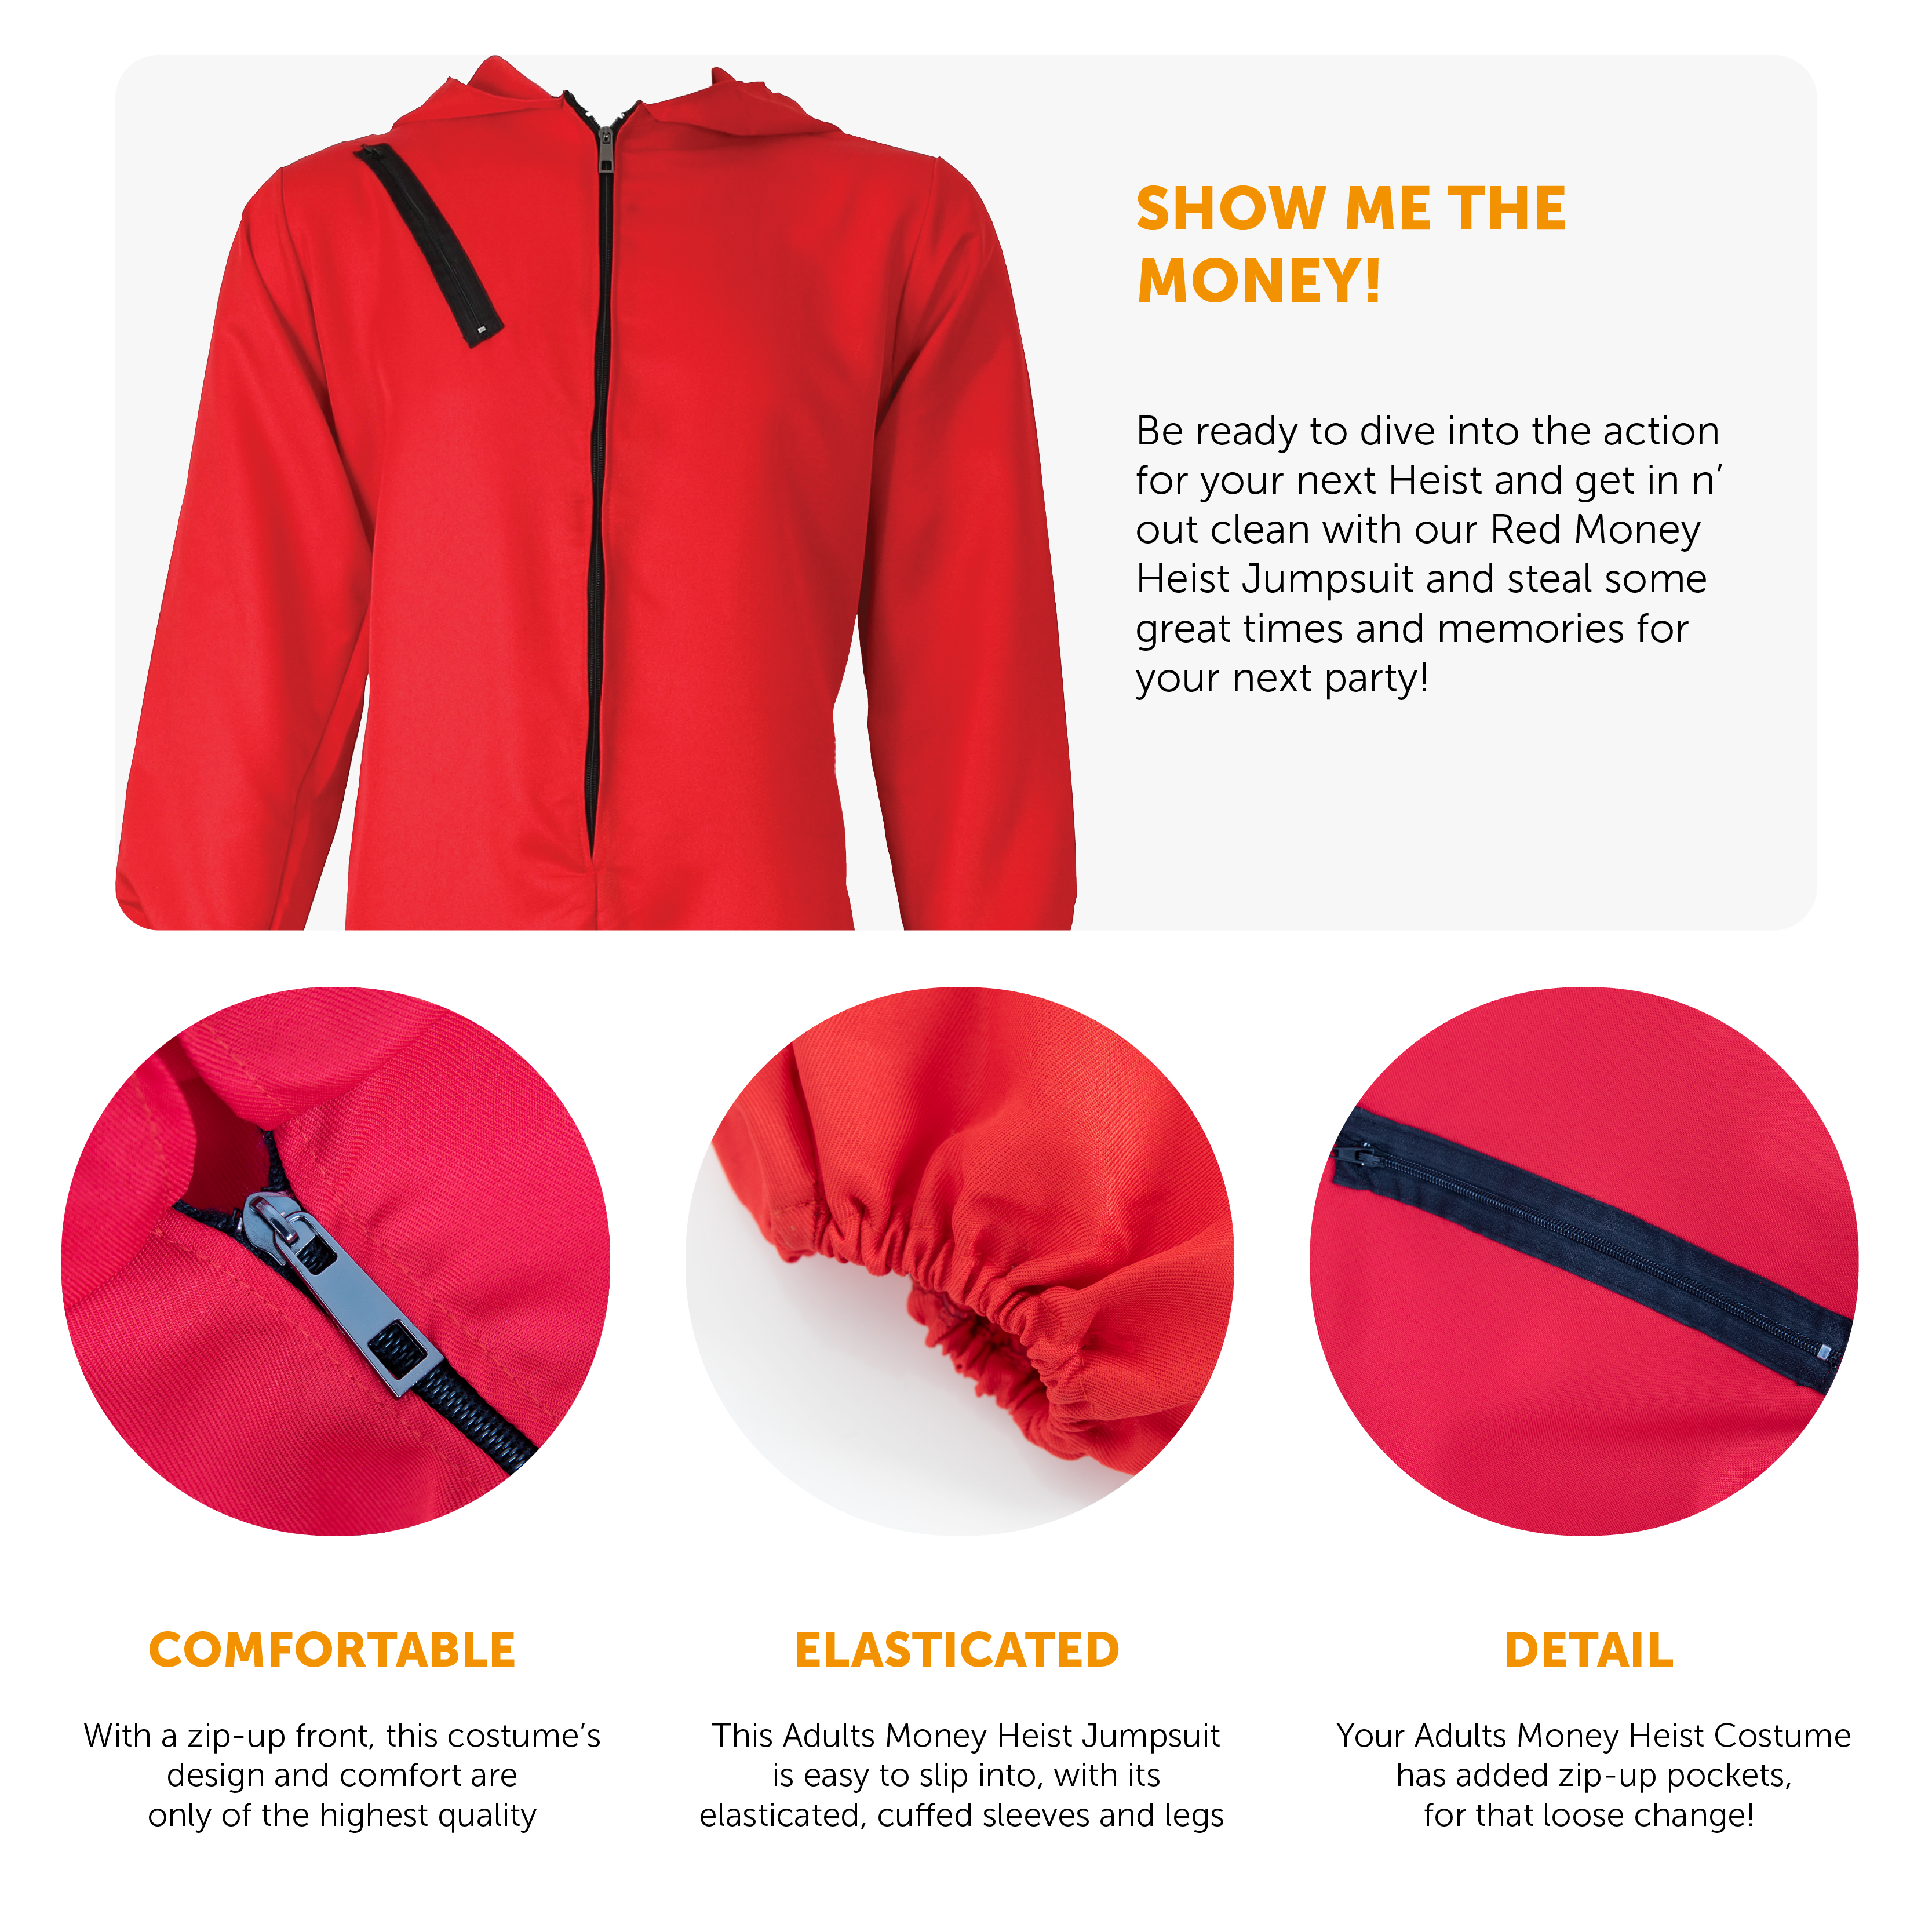 Buy FUGAZEE Men's Red Money Heist Jumpsuit at Amazon.in